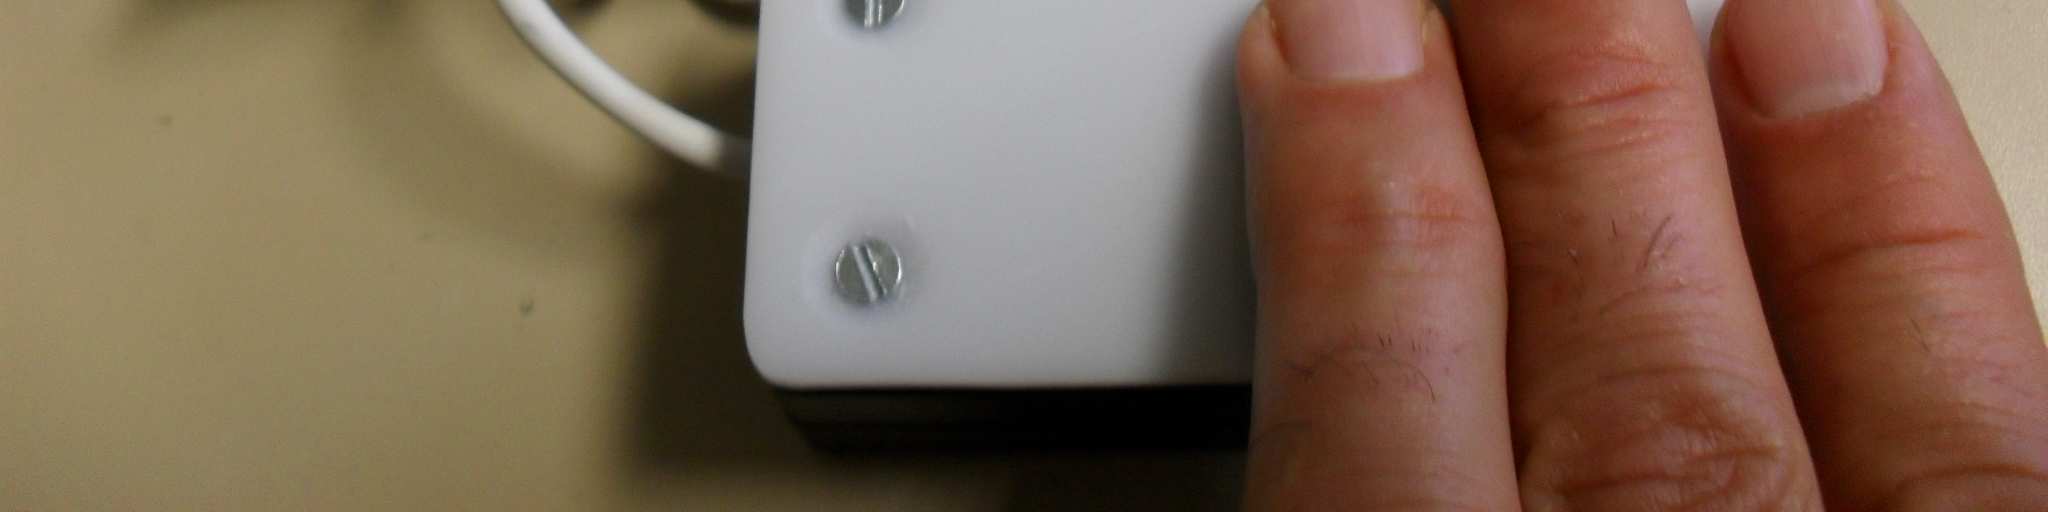 pilas AAA consta de una salida jack de 3,5mm. para poder conectar un pulsador.